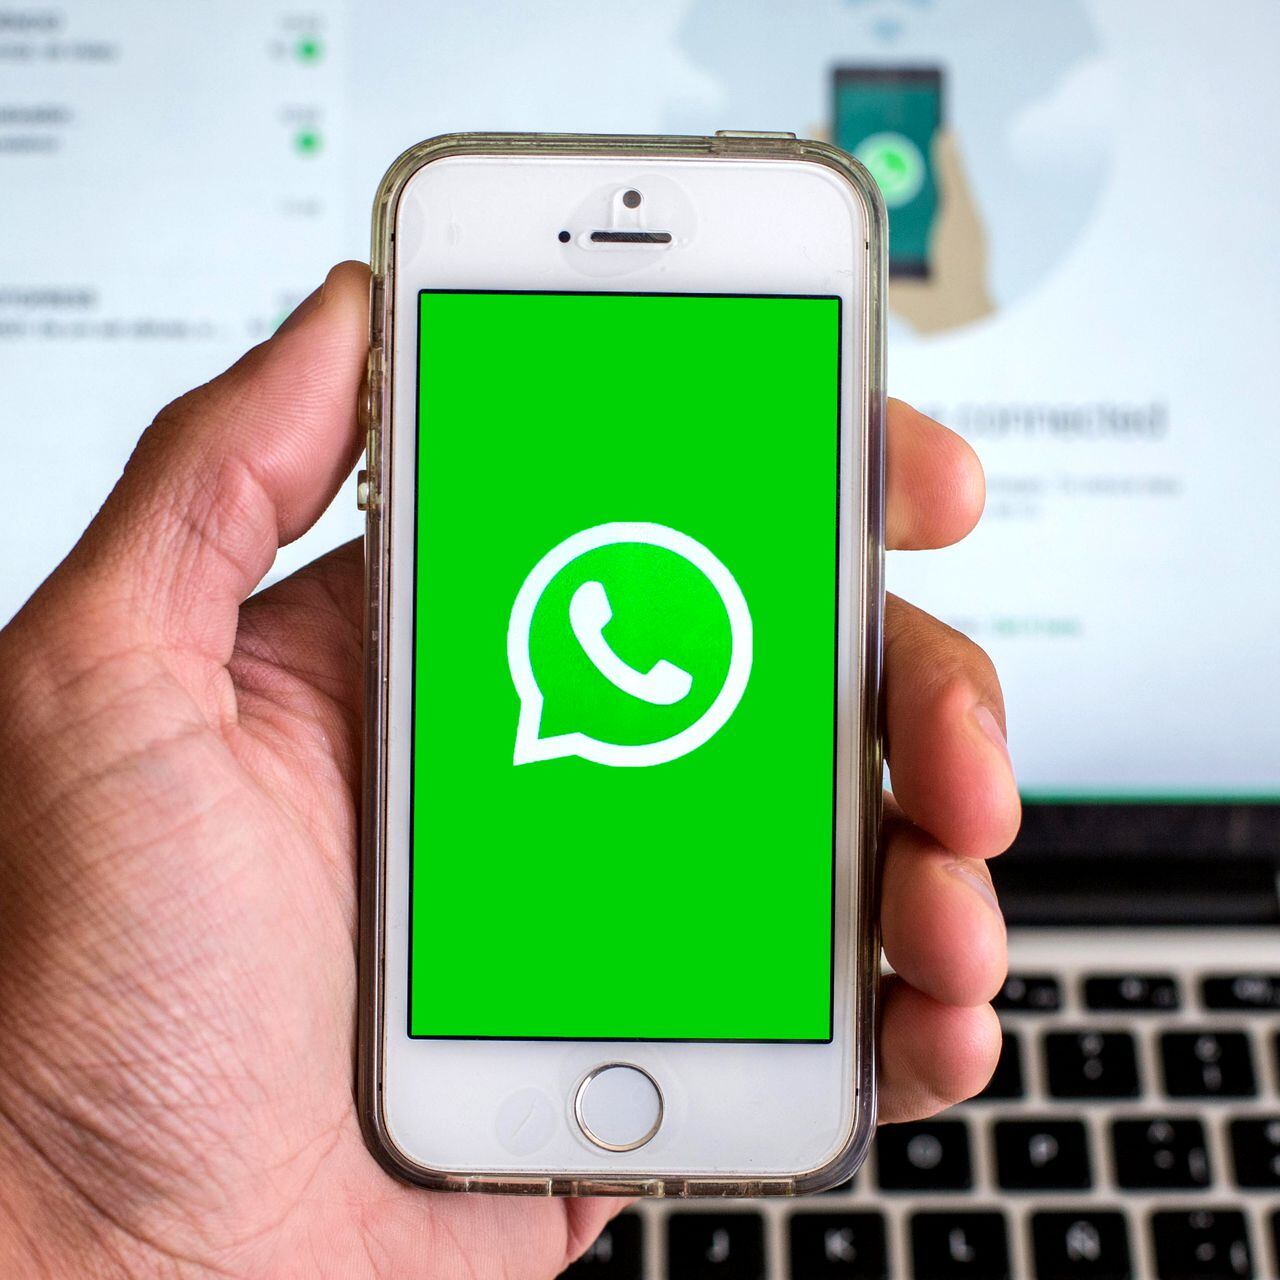 Celulares sin WhatsApp en 2024: consulte si el suyo está en la lista